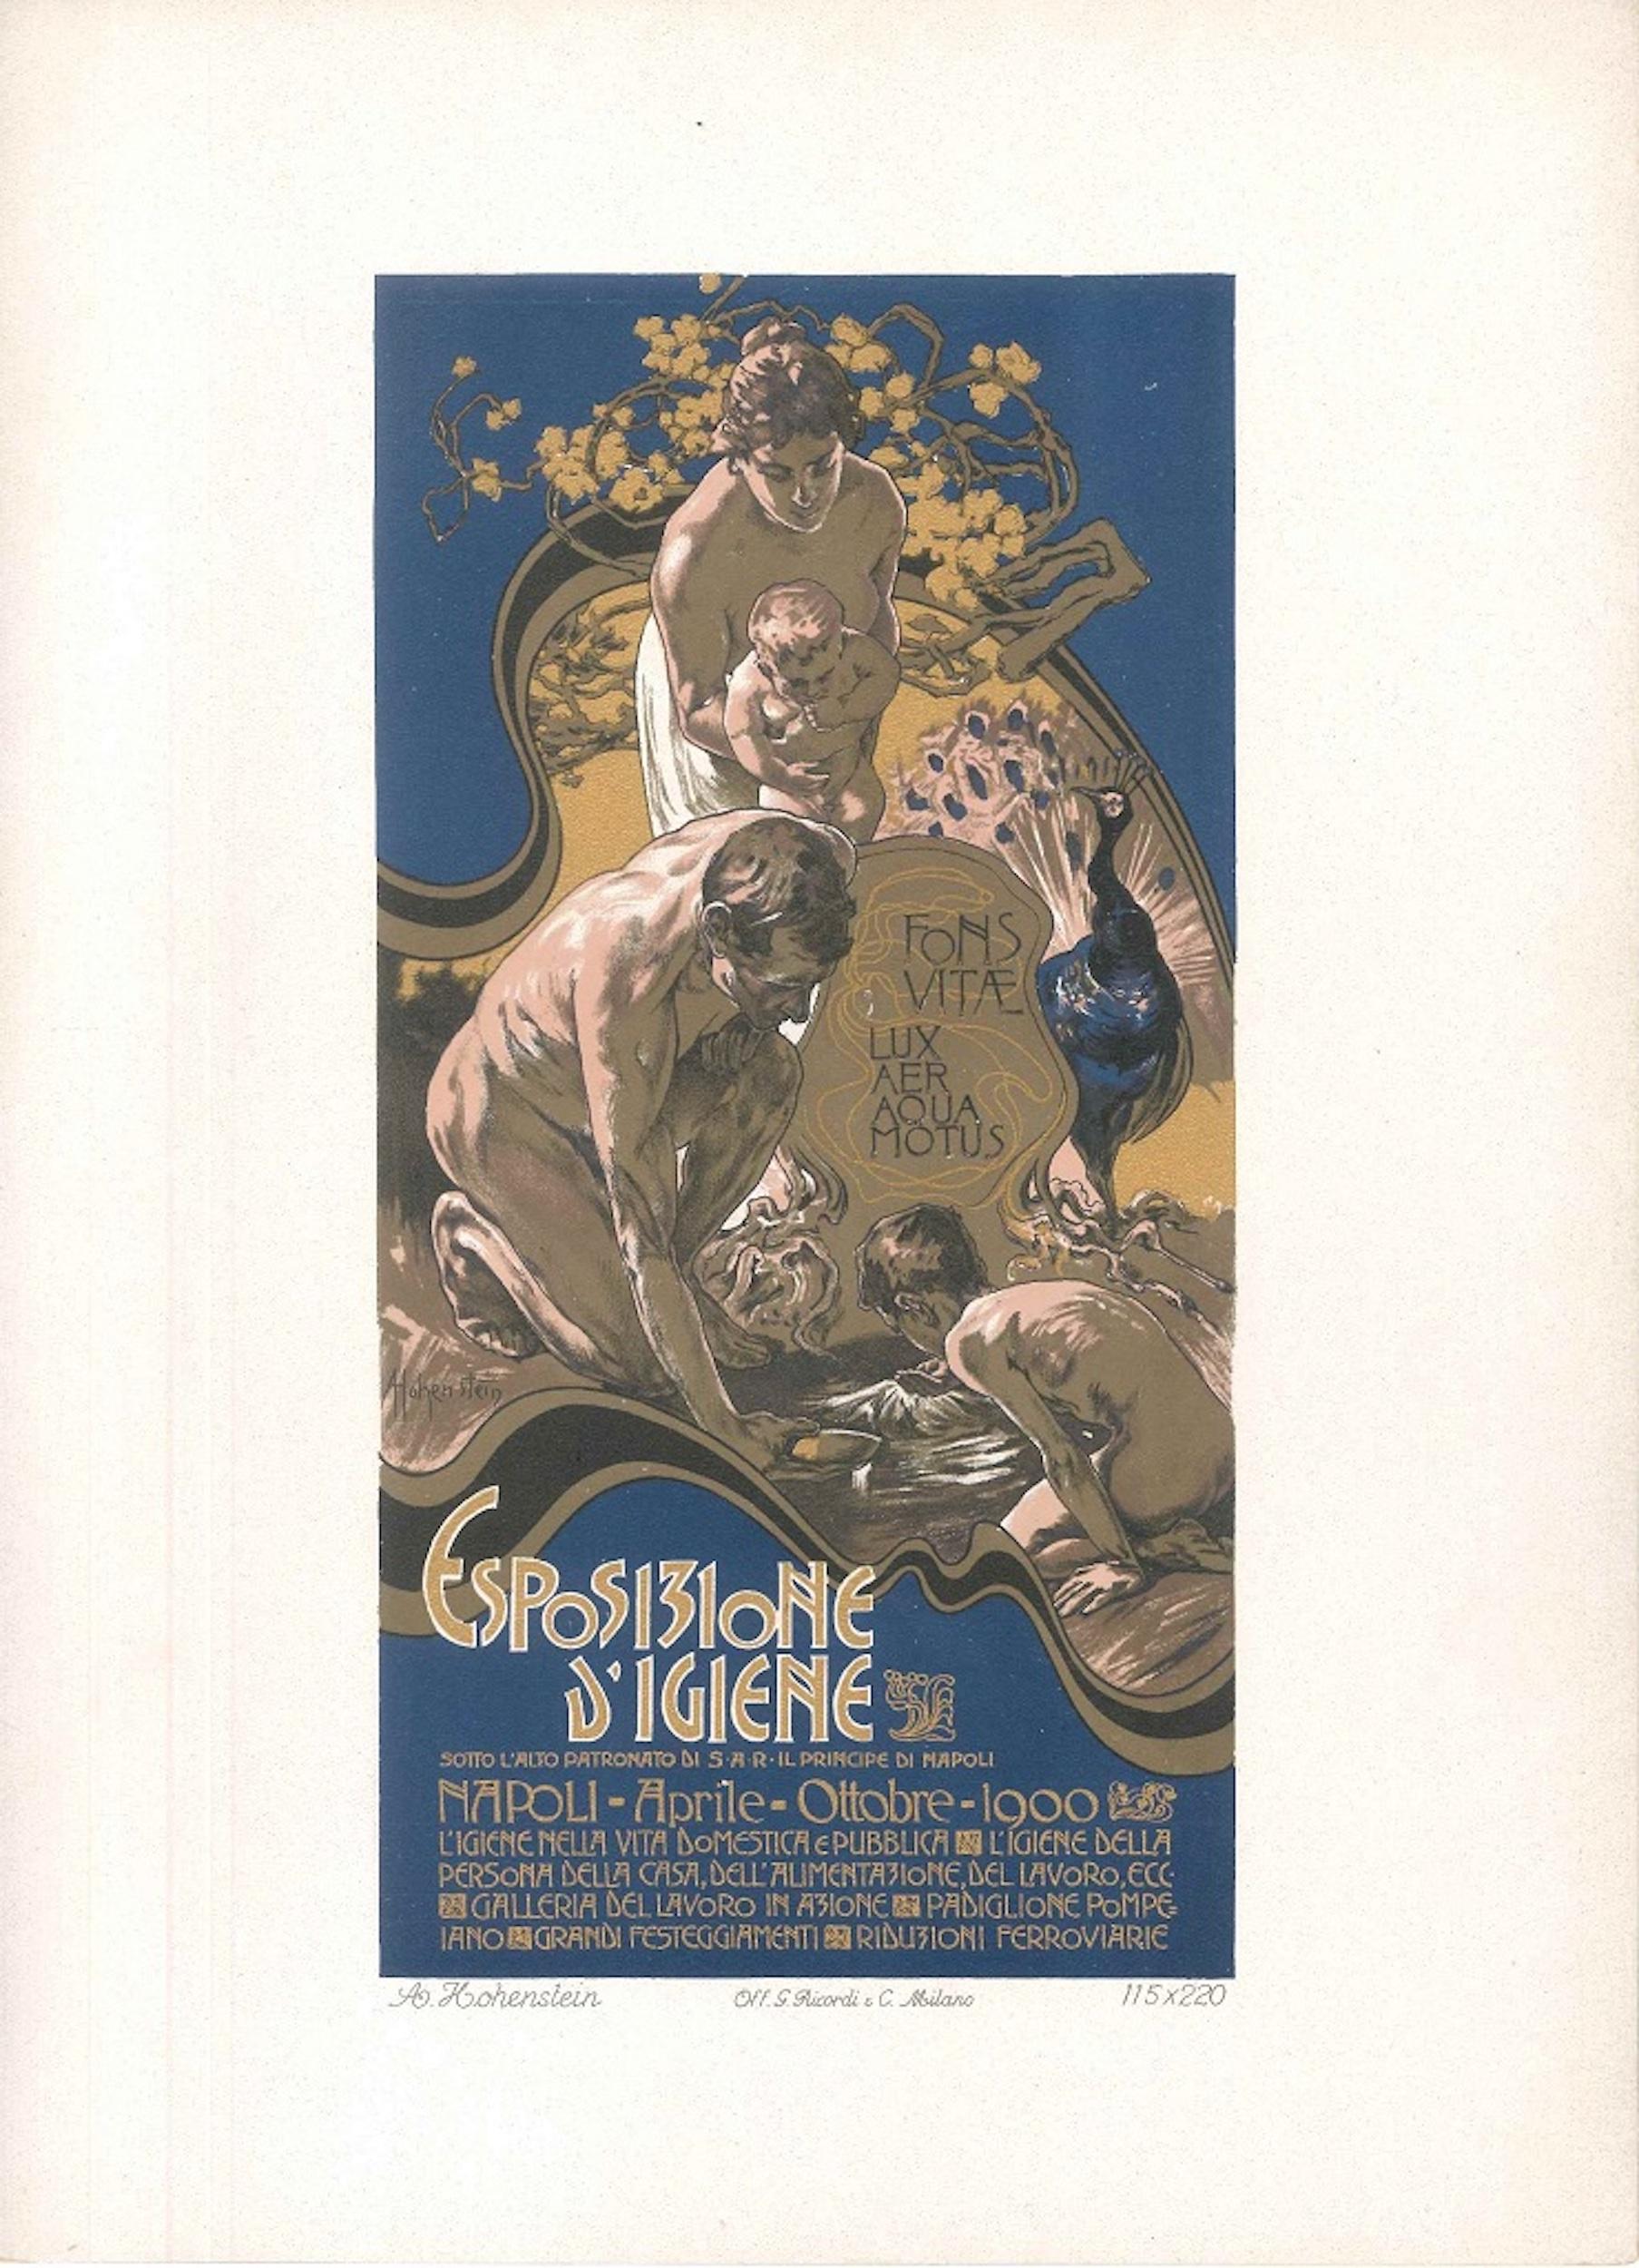 Esposizione d'Igiene - Original Lithograph by A. Hohenstein - 1900 - Print by Adolfo Hohenstein